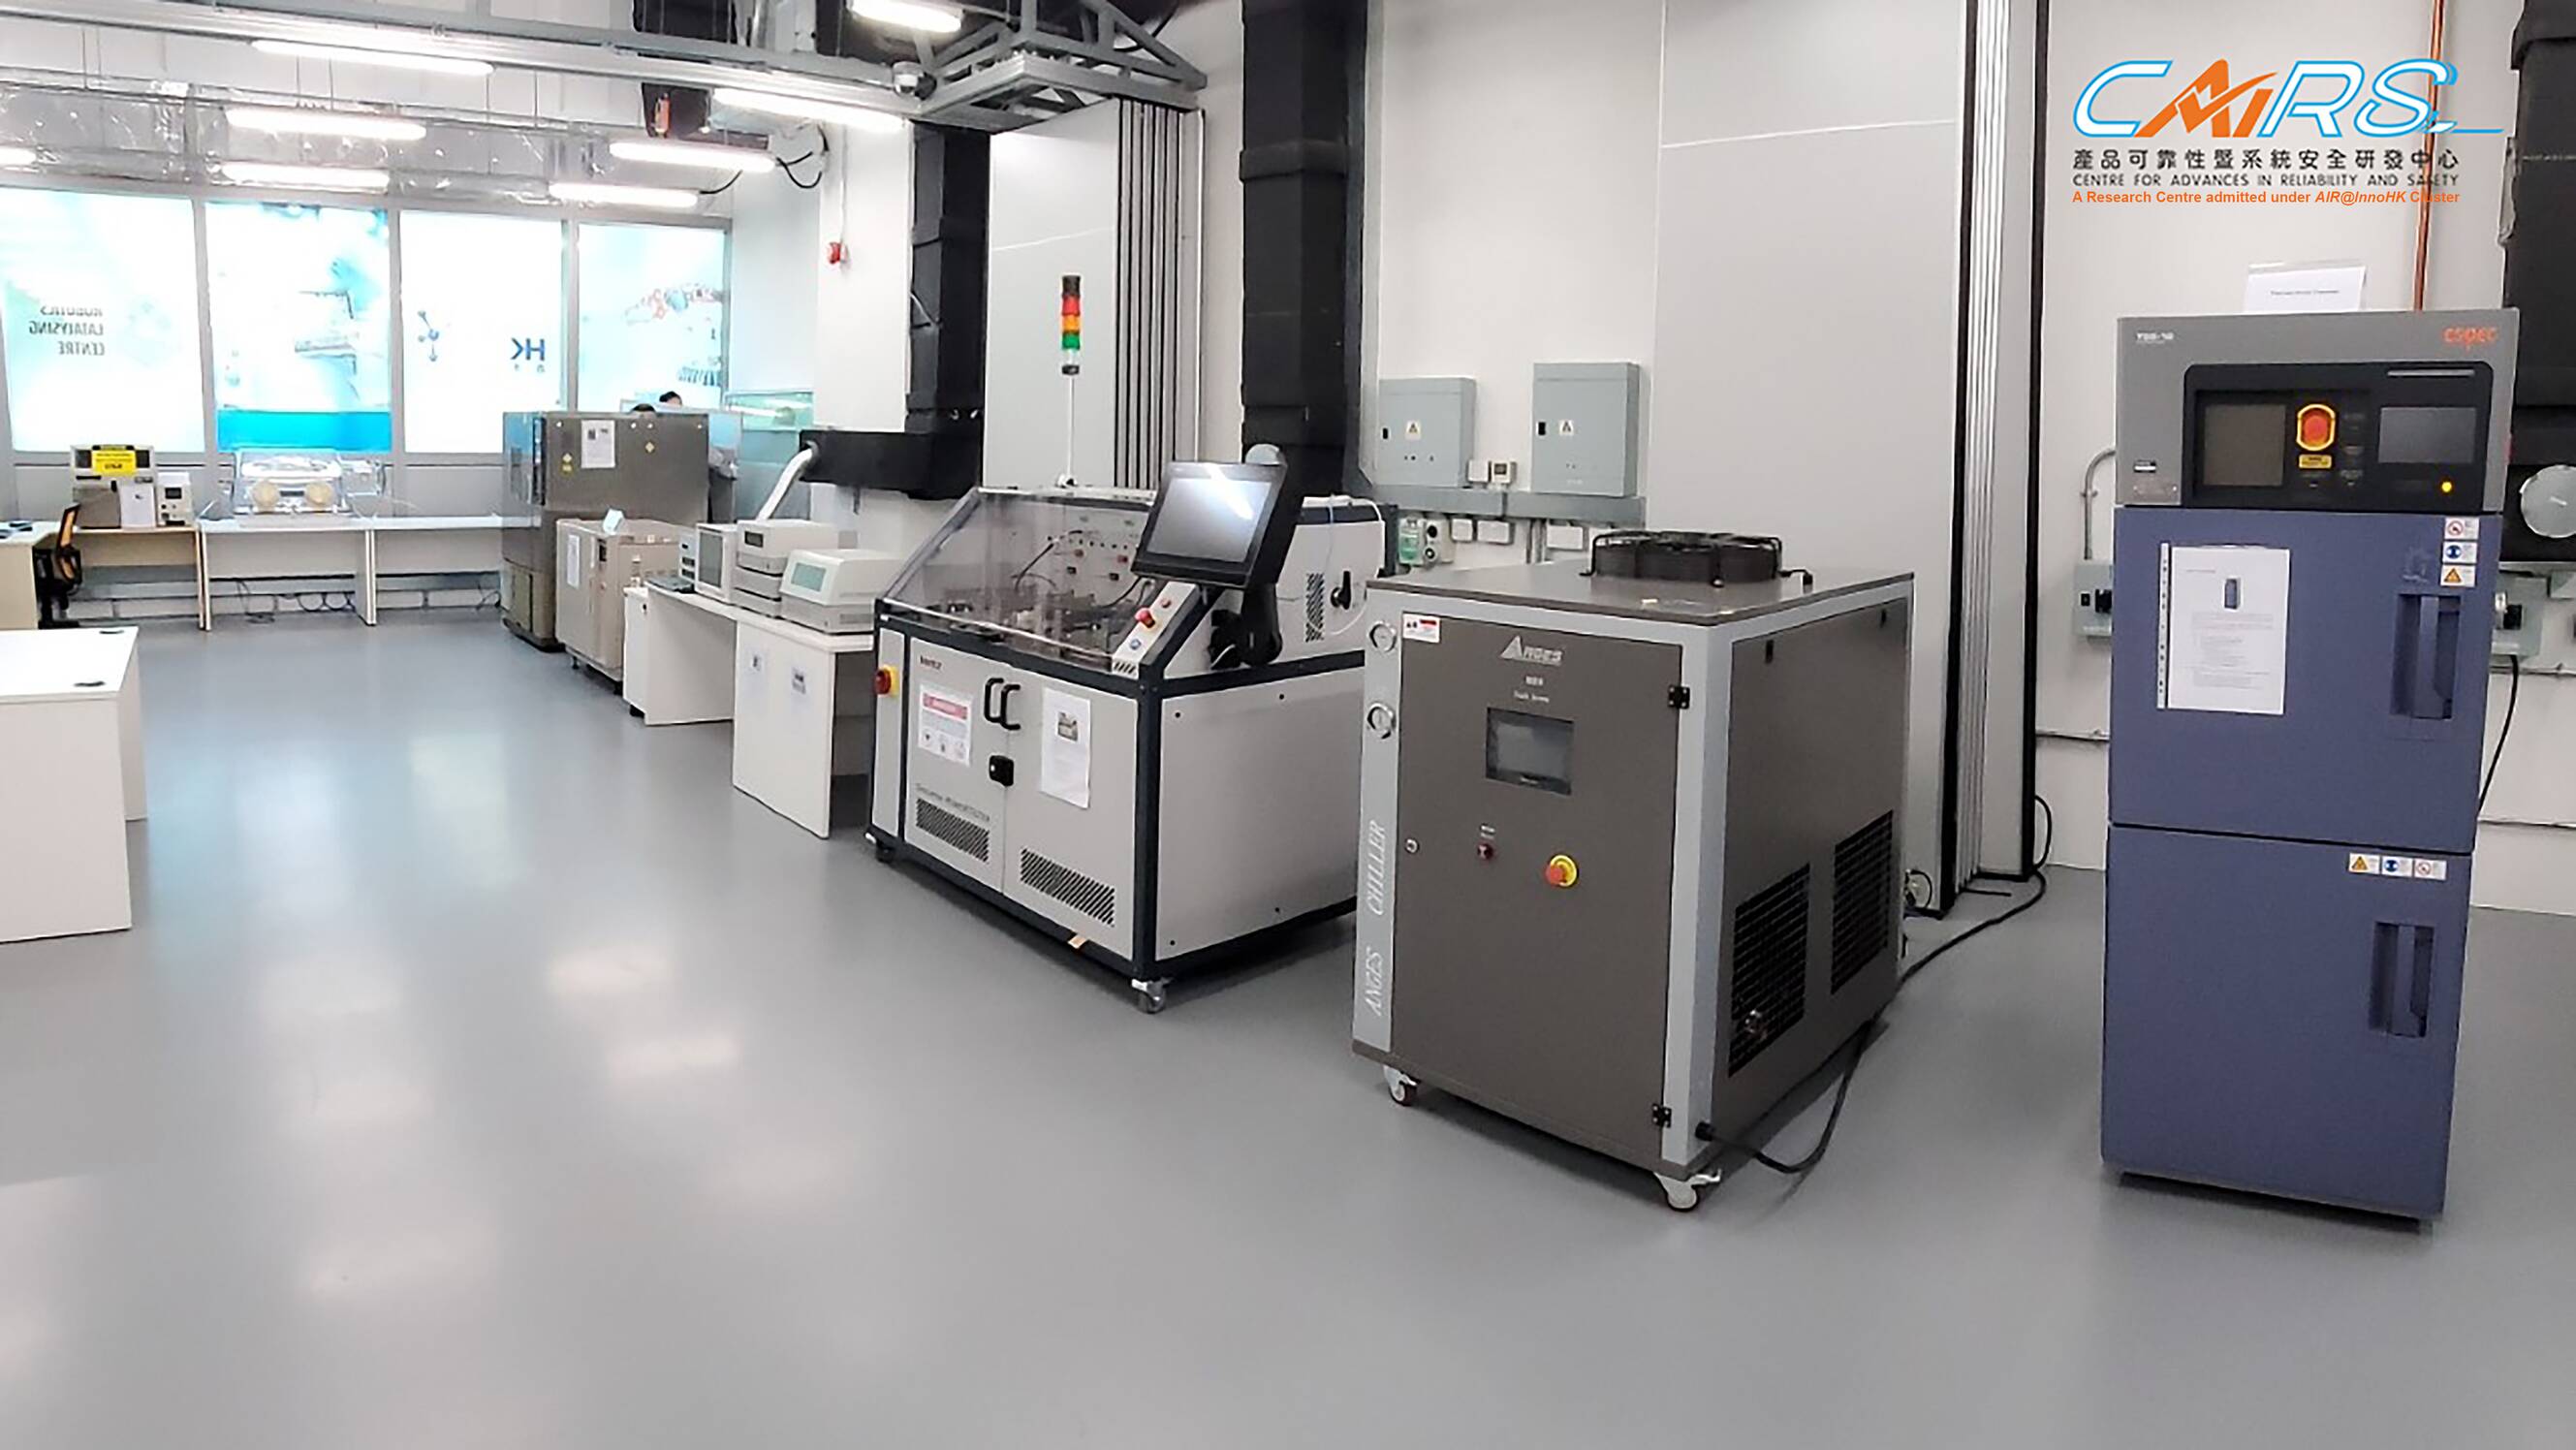 CAiRS的實驗室擁有多款先進的設備 供研究產品可靠及系統安全之用。